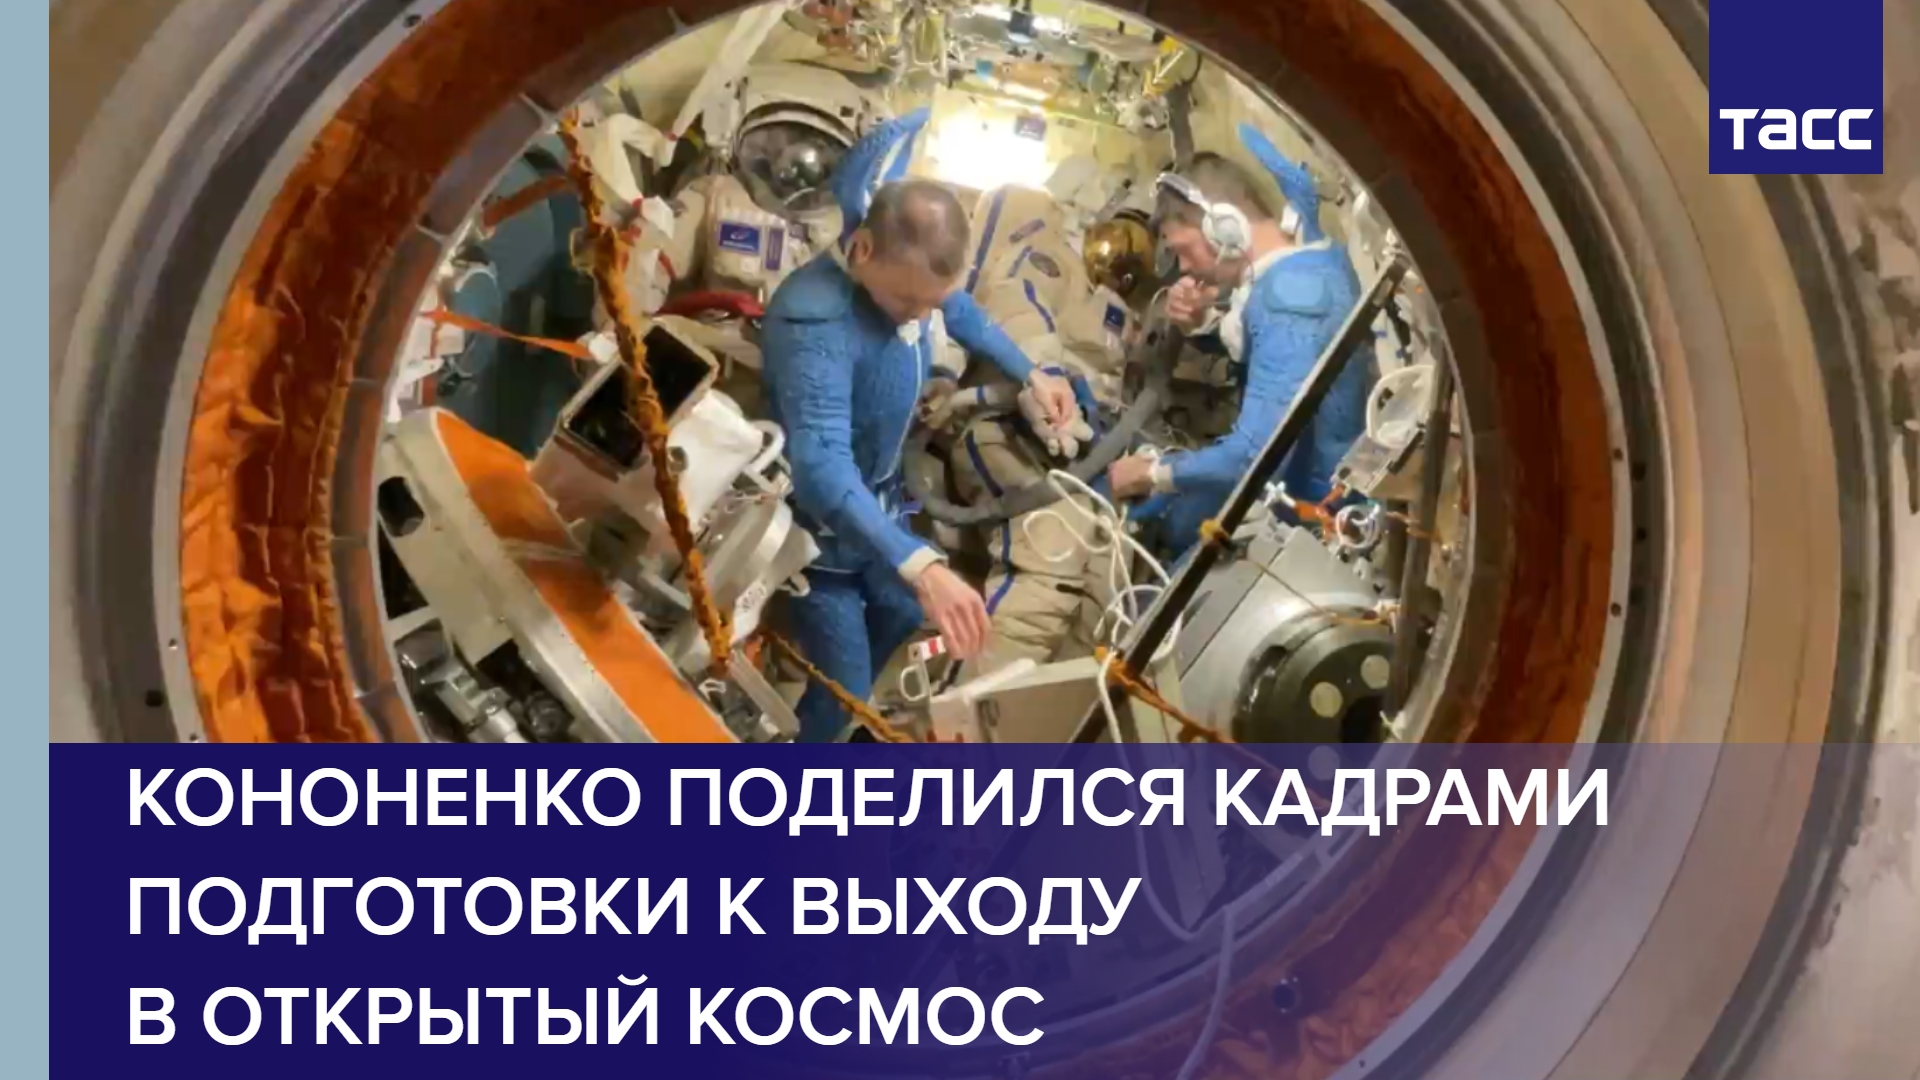 Кононенко поделился кадрами подготовки к выходу в открытый космос